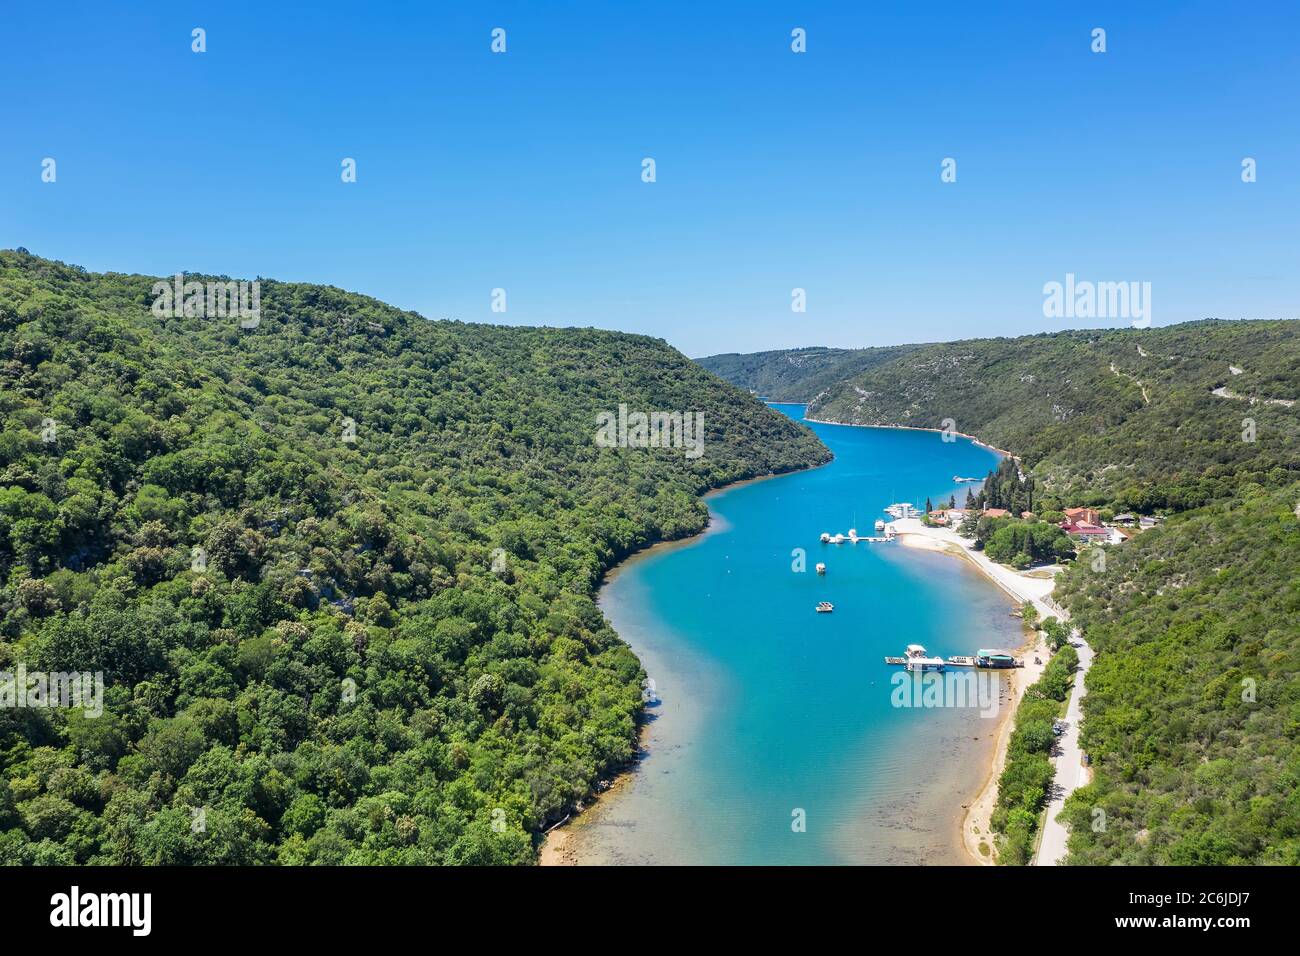 Eine Luftaufnahme des Limski Kanal Fjords, Istrien, Kroatien Stockfoto